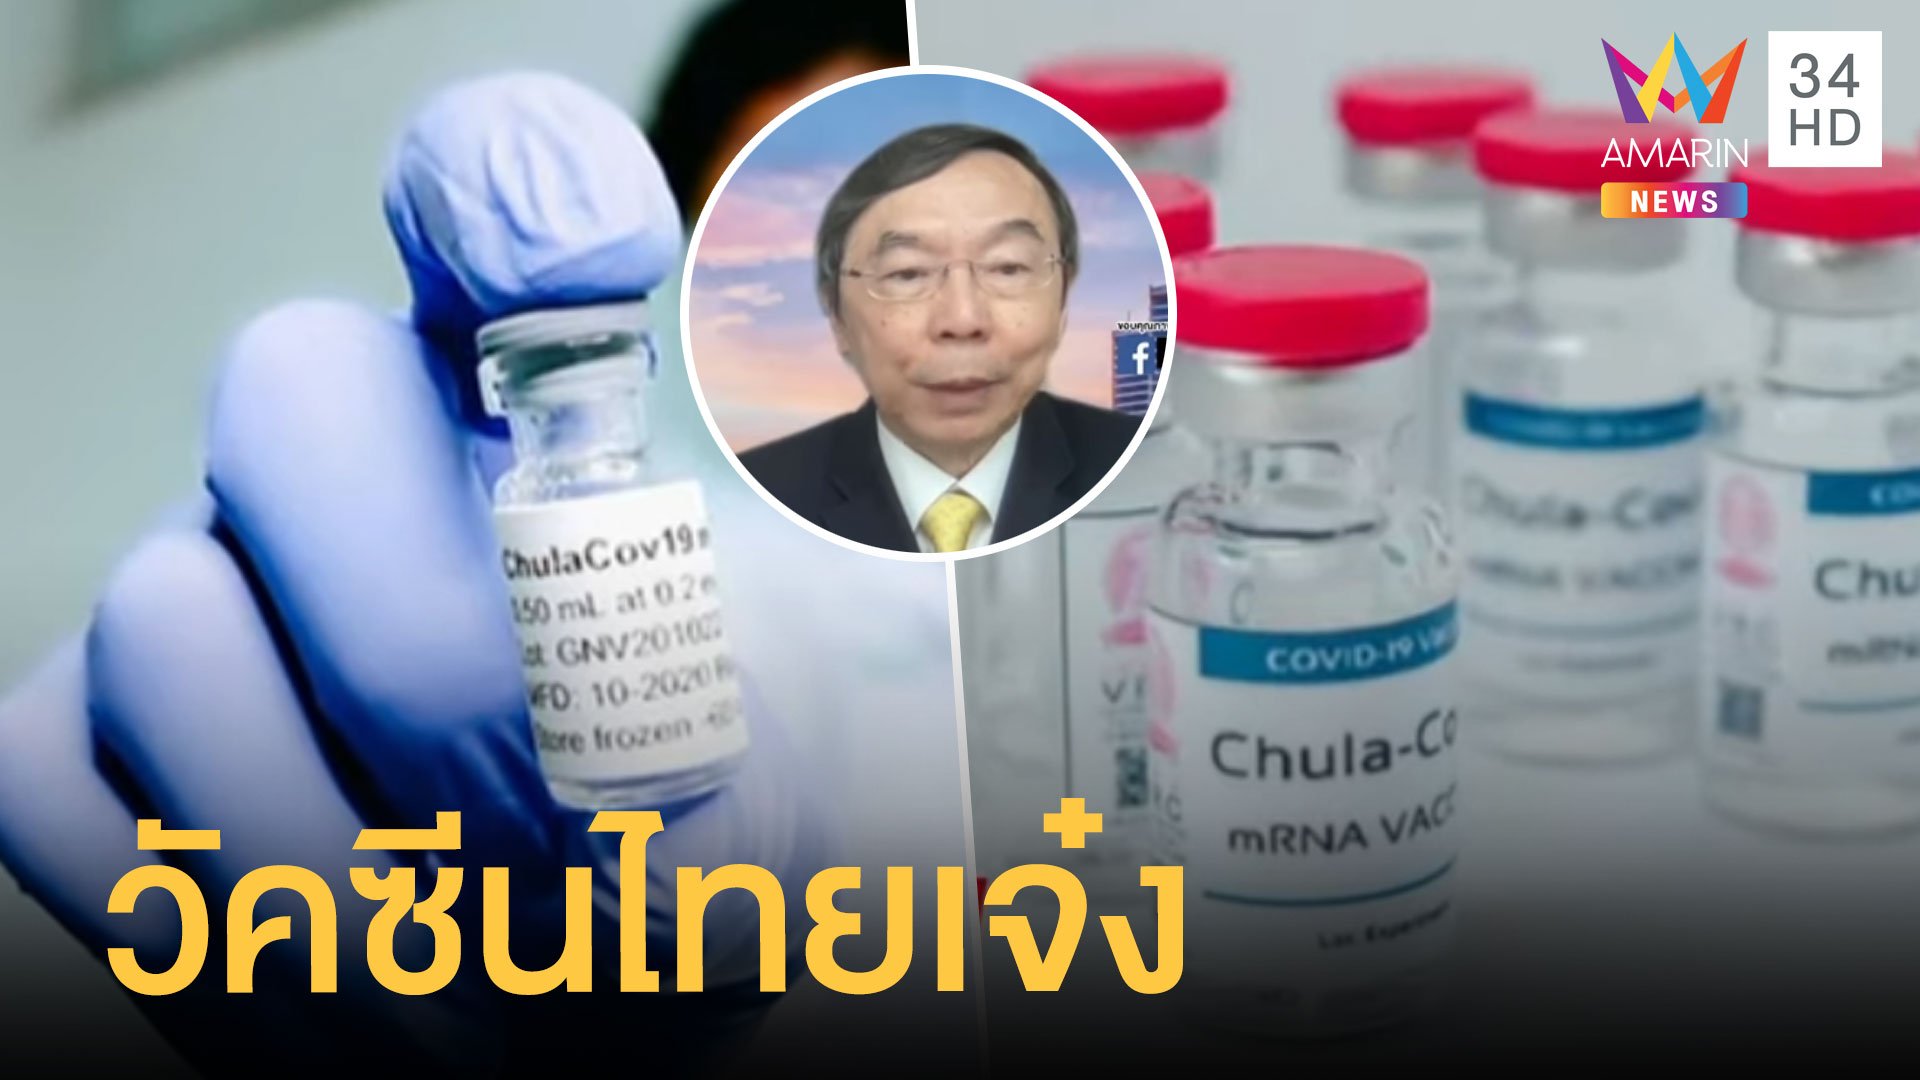 นักวิจัยไทยเจ๋งวัคซีน Chilacov19 ป้องกัน 4 สายพันธุ์เทียบเท่าไฟเซอร์ | ข่าวอรุณอมรินทร์ | 17 ส.ค. 64 | AMARIN TVHD34